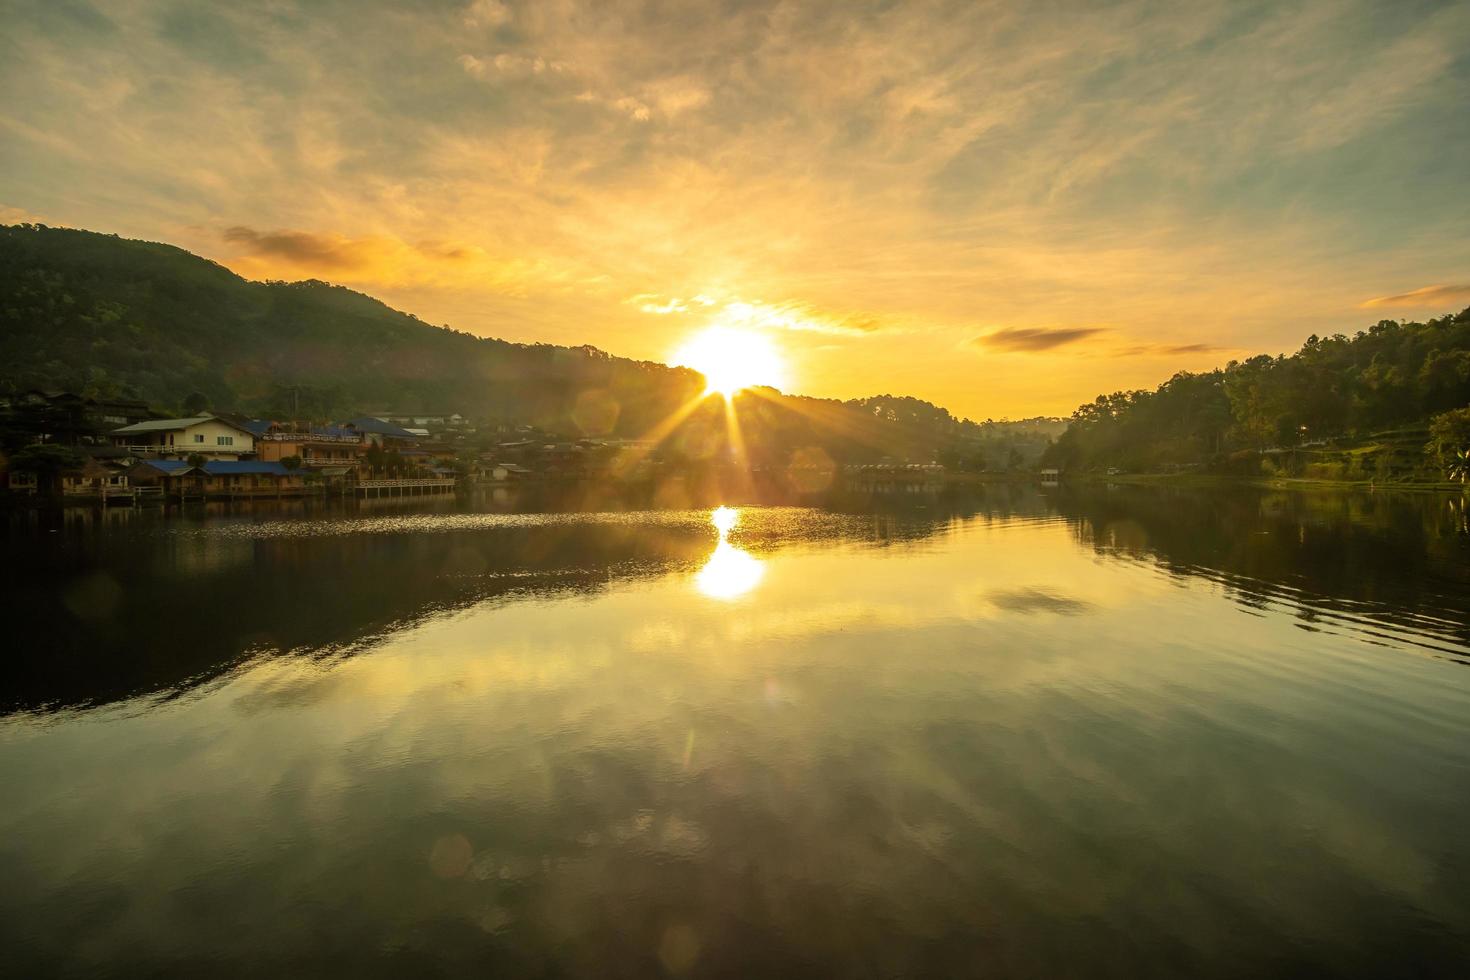 Schöner Blick auf den See bei Sonnenaufgang, Ban Rak Thai Village, Wahrzeichen und beliebt für Touristenattraktionen, Provinz Mae Hong Son, Thailand. reisekonzept foto